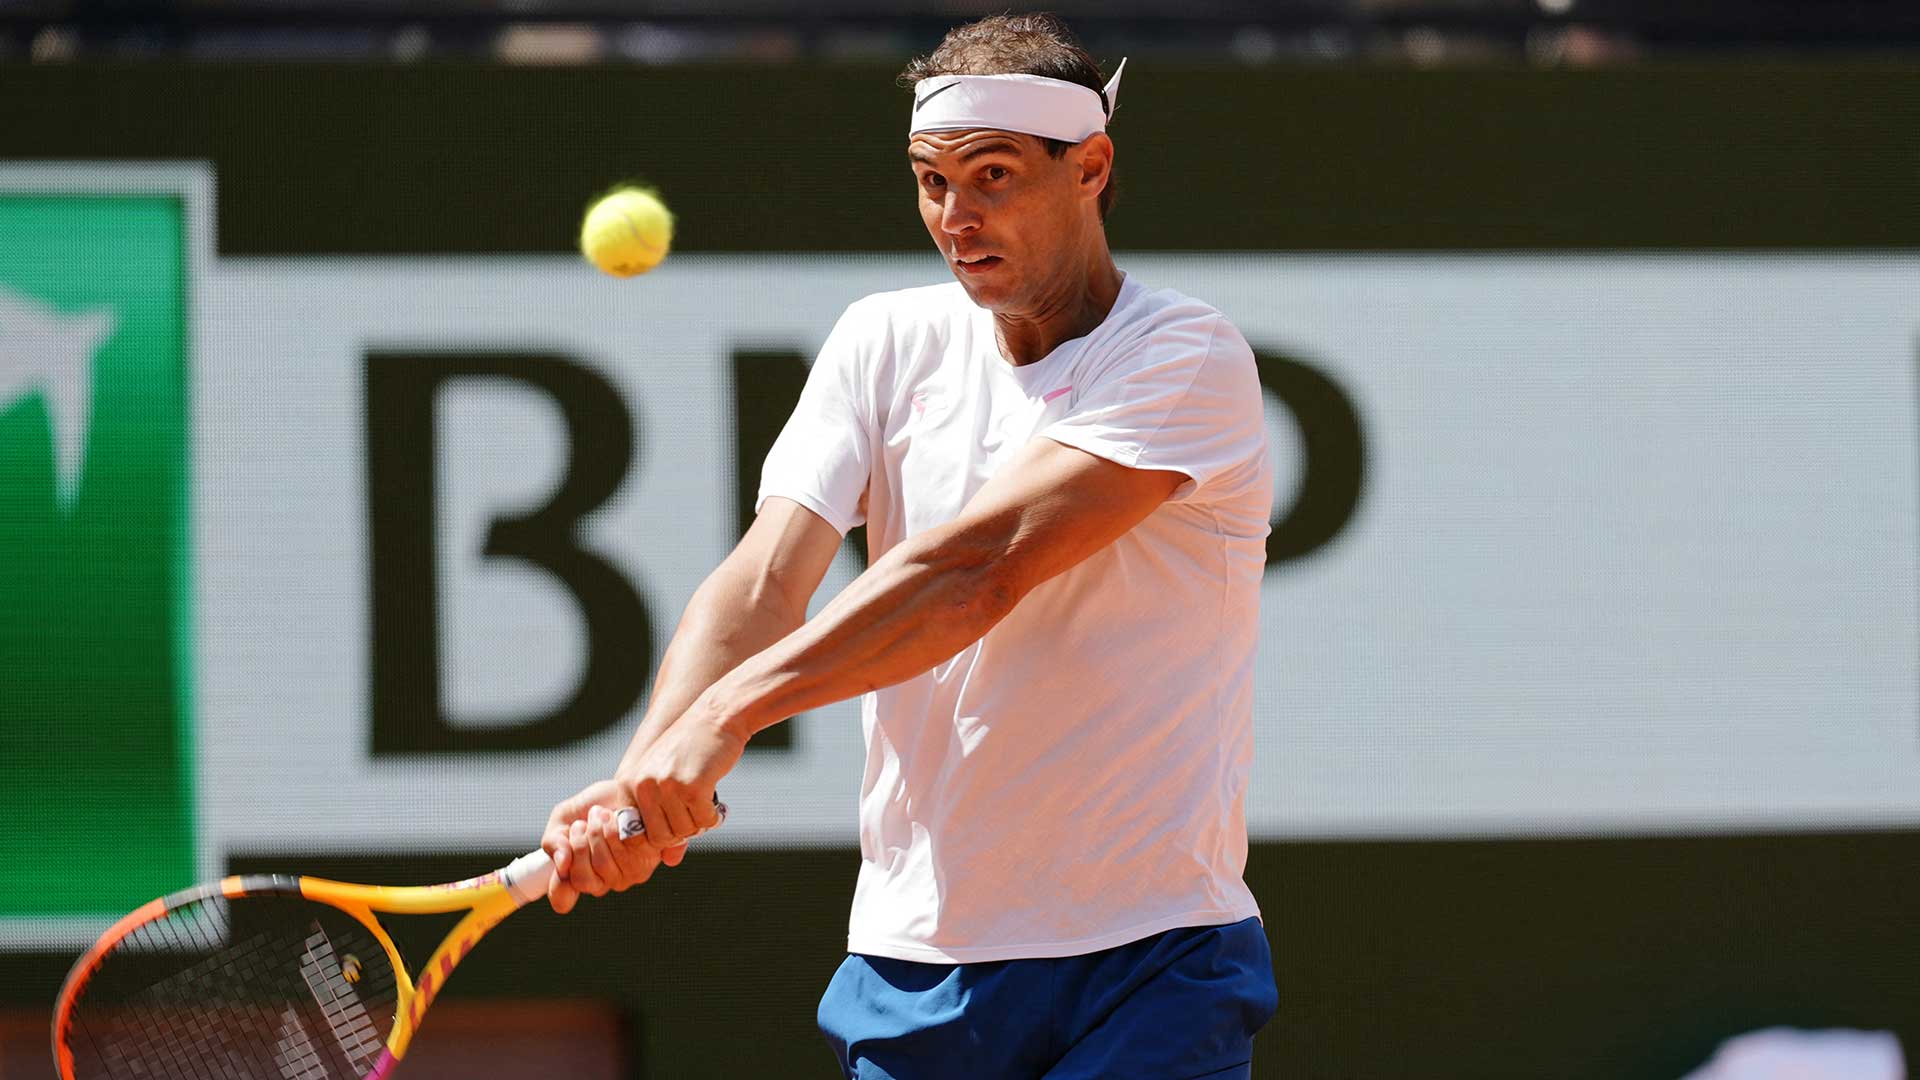 Rafael Nadal faces Alexander Zverev in Roland Garros first round ATP